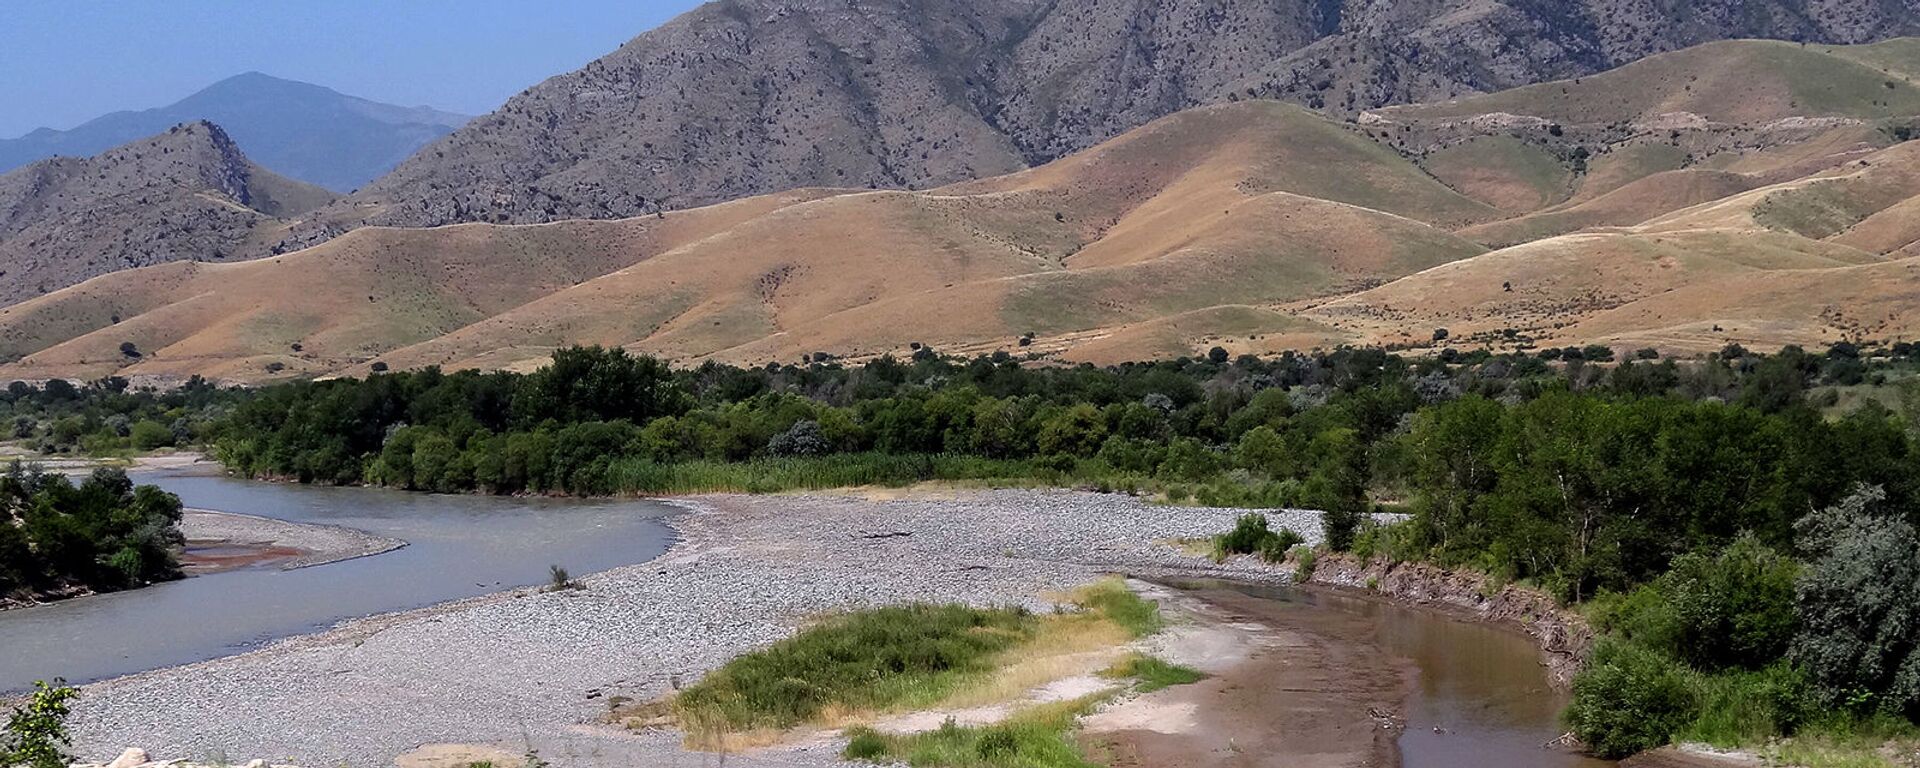 Արաքս գետը Արցախի, Իրանի ու Ադրբեջանի սահմանին - Sputnik Արմենիա, 1920, 04.10.2021